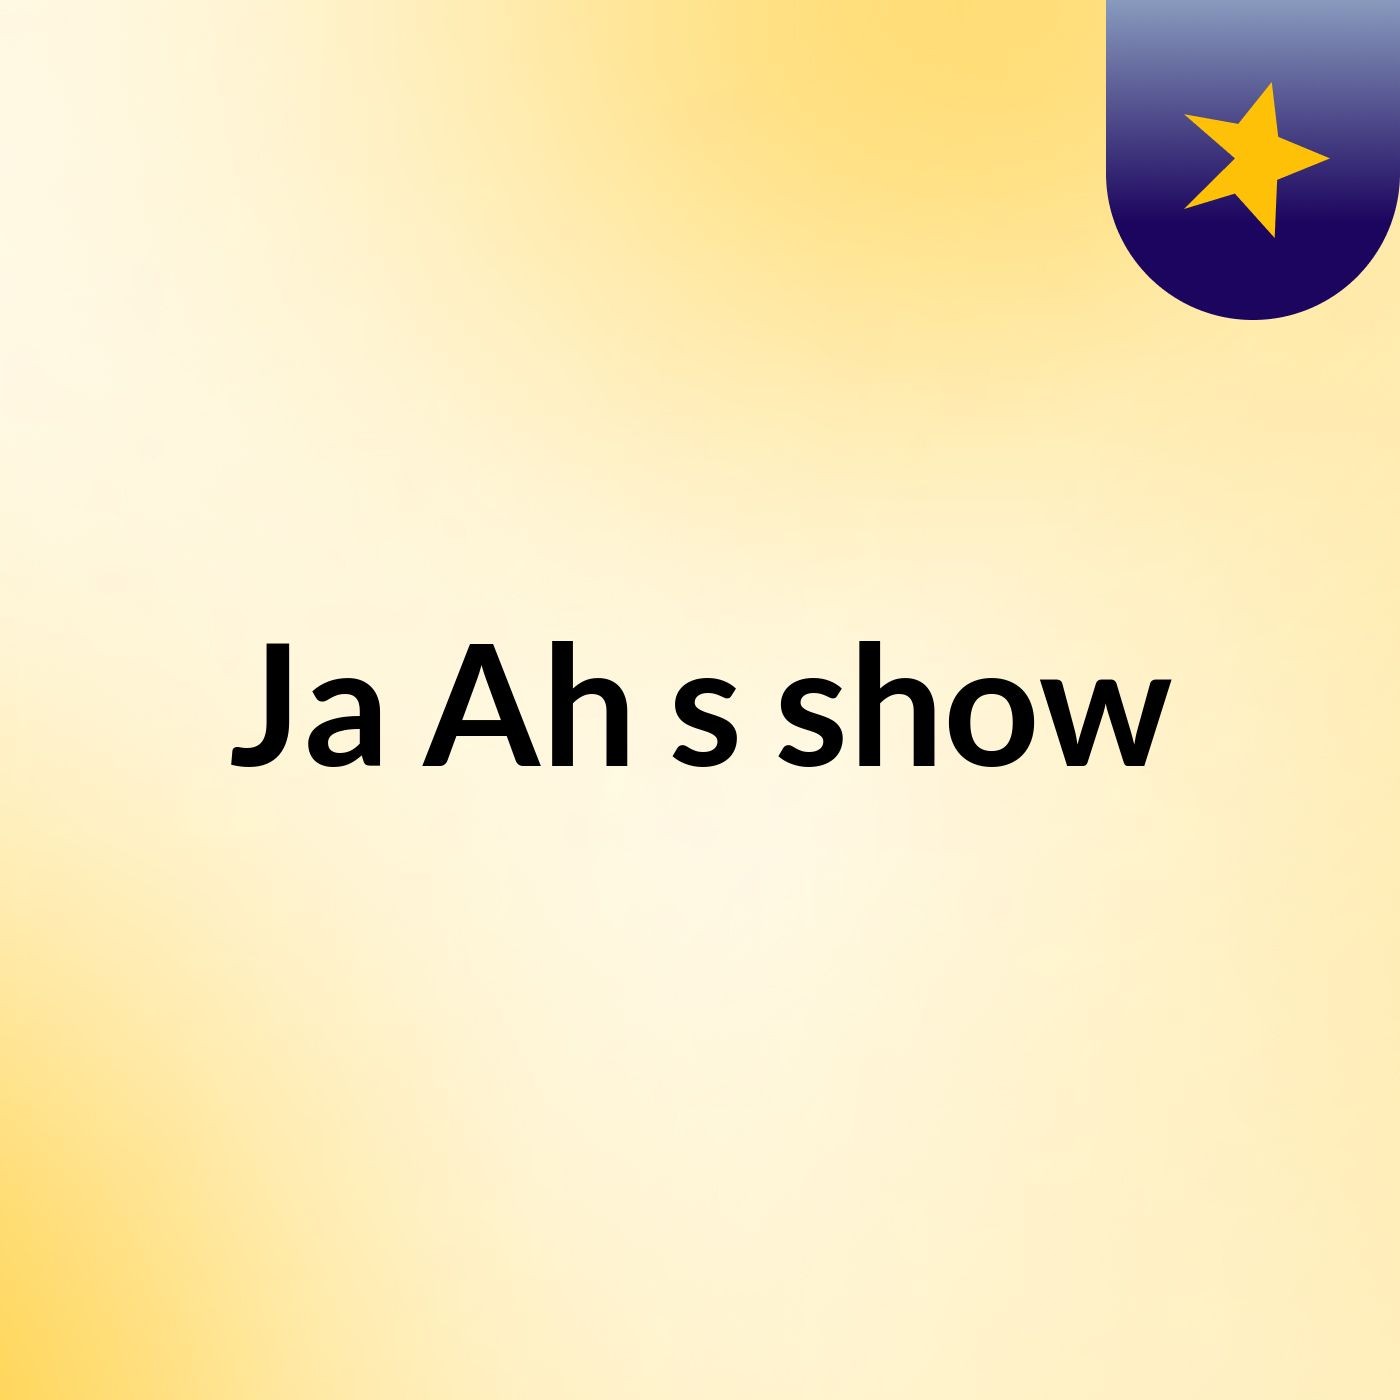 Ja Ah's show